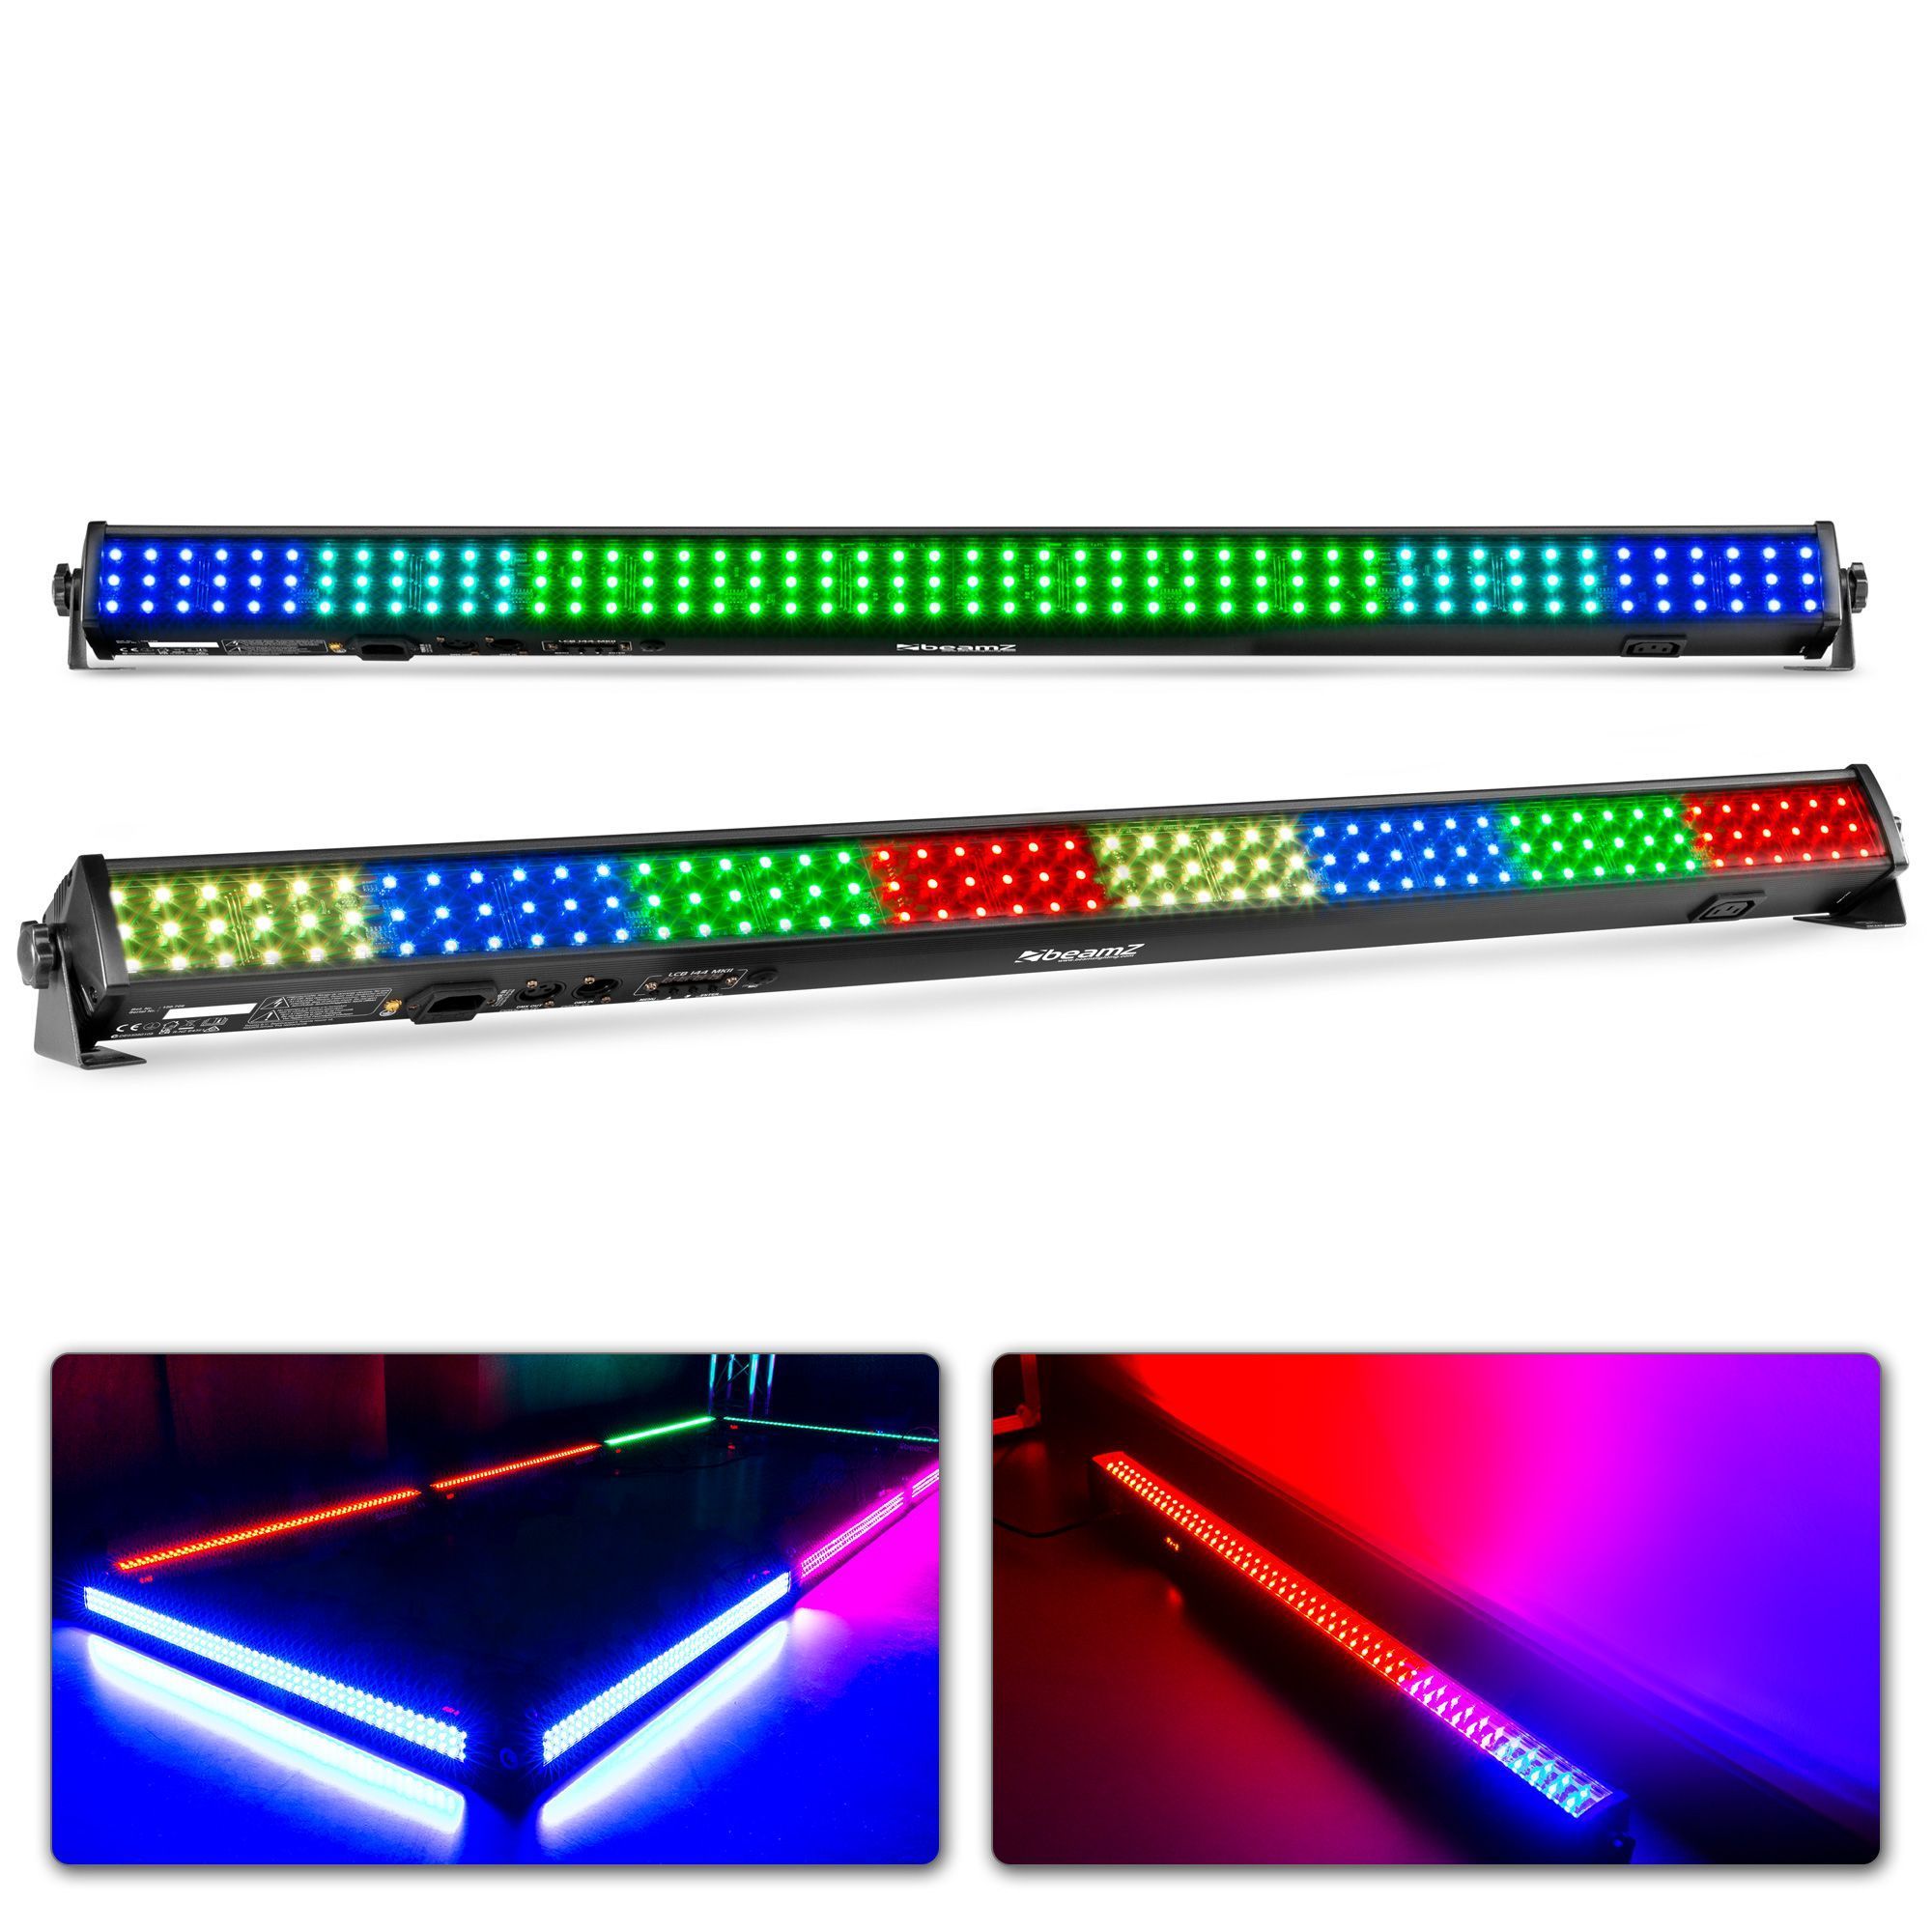 BeamZ LCB144 MKII - Set van 2 RGB LED bars voor wanden, plafonds, etc.